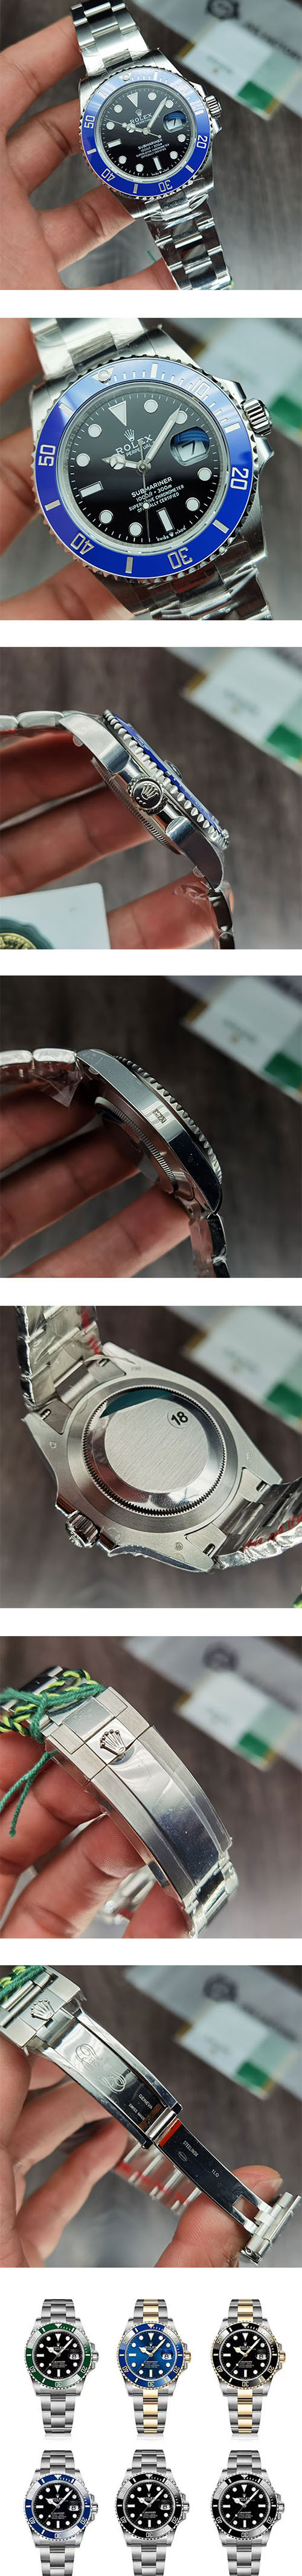 【今日特価】ロレックス サブマリーナー コピー時計M126619LB-0003通販限定モデル